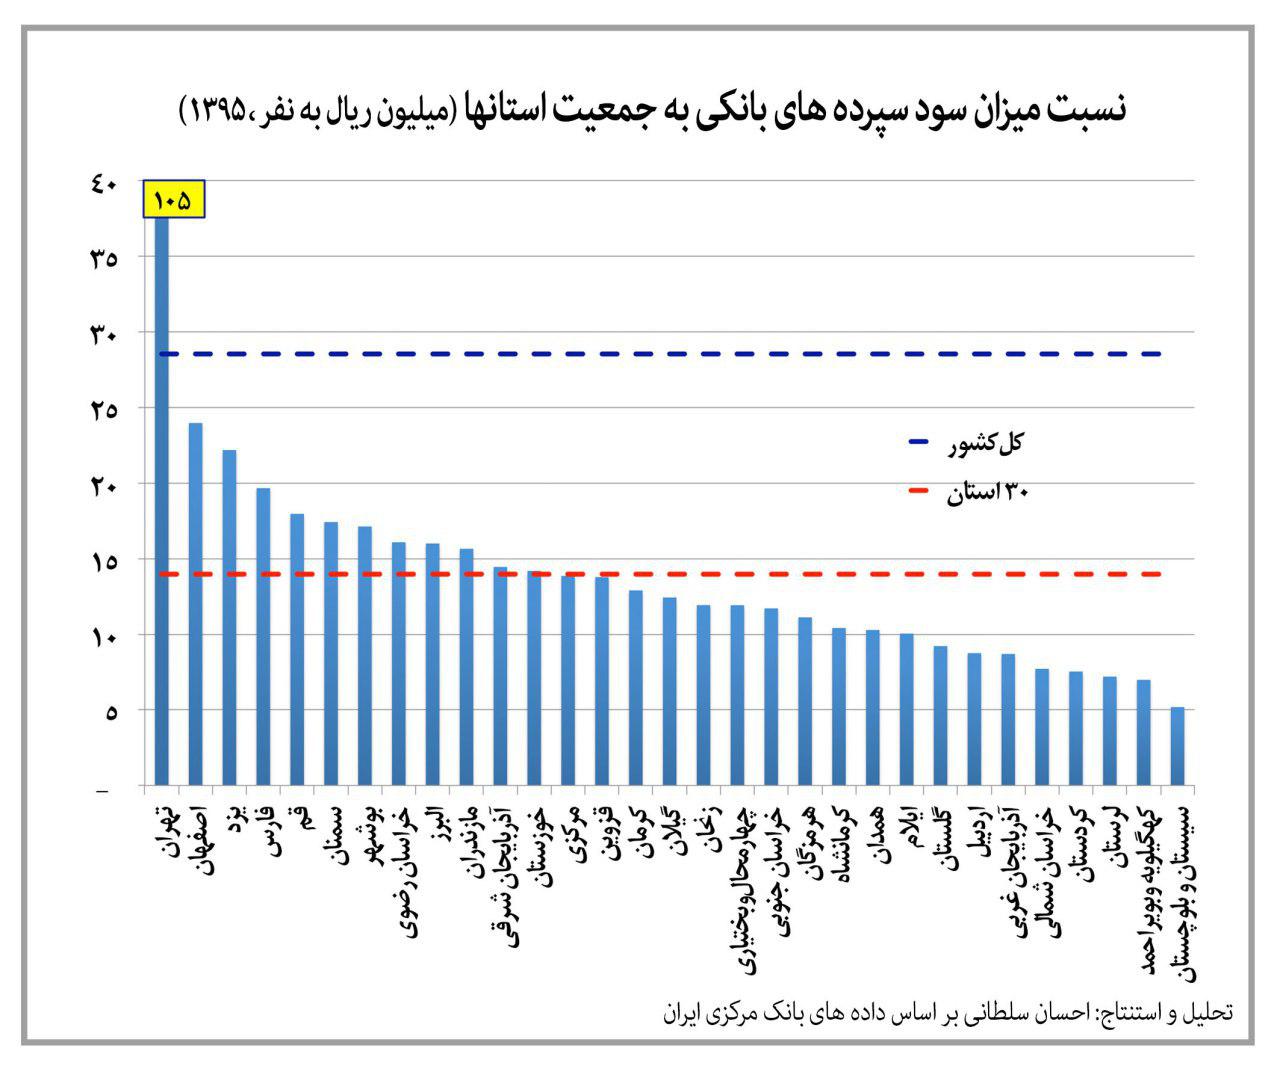 میزان و توزیع سود سپرده ها در سطح استانها